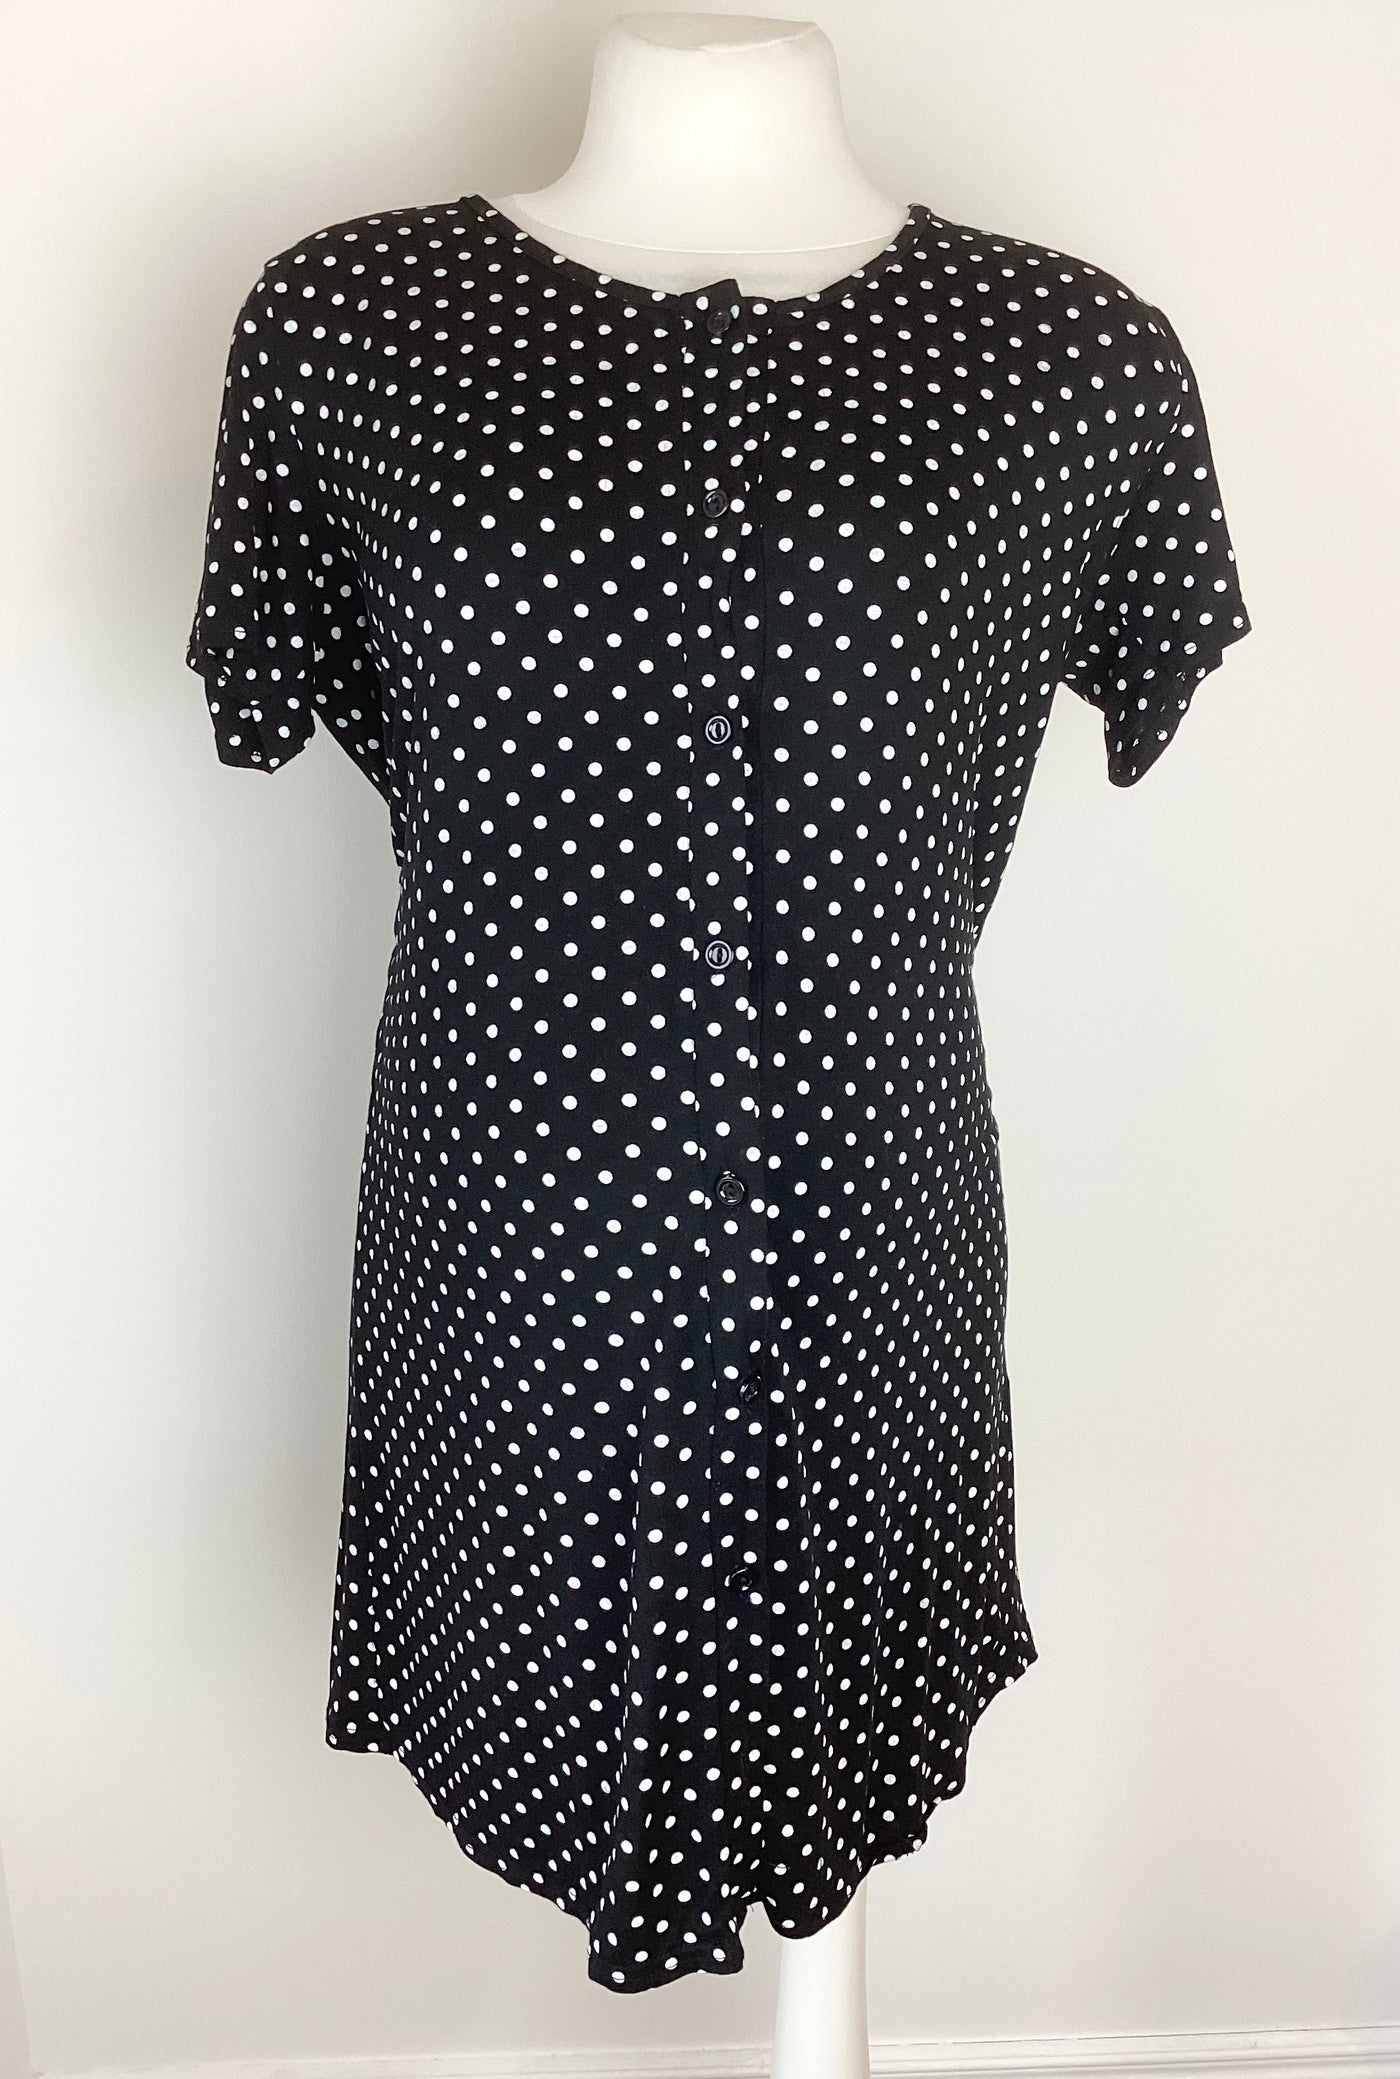 Boohoo Maternity black & white polkadot button front nightdress - Size 12